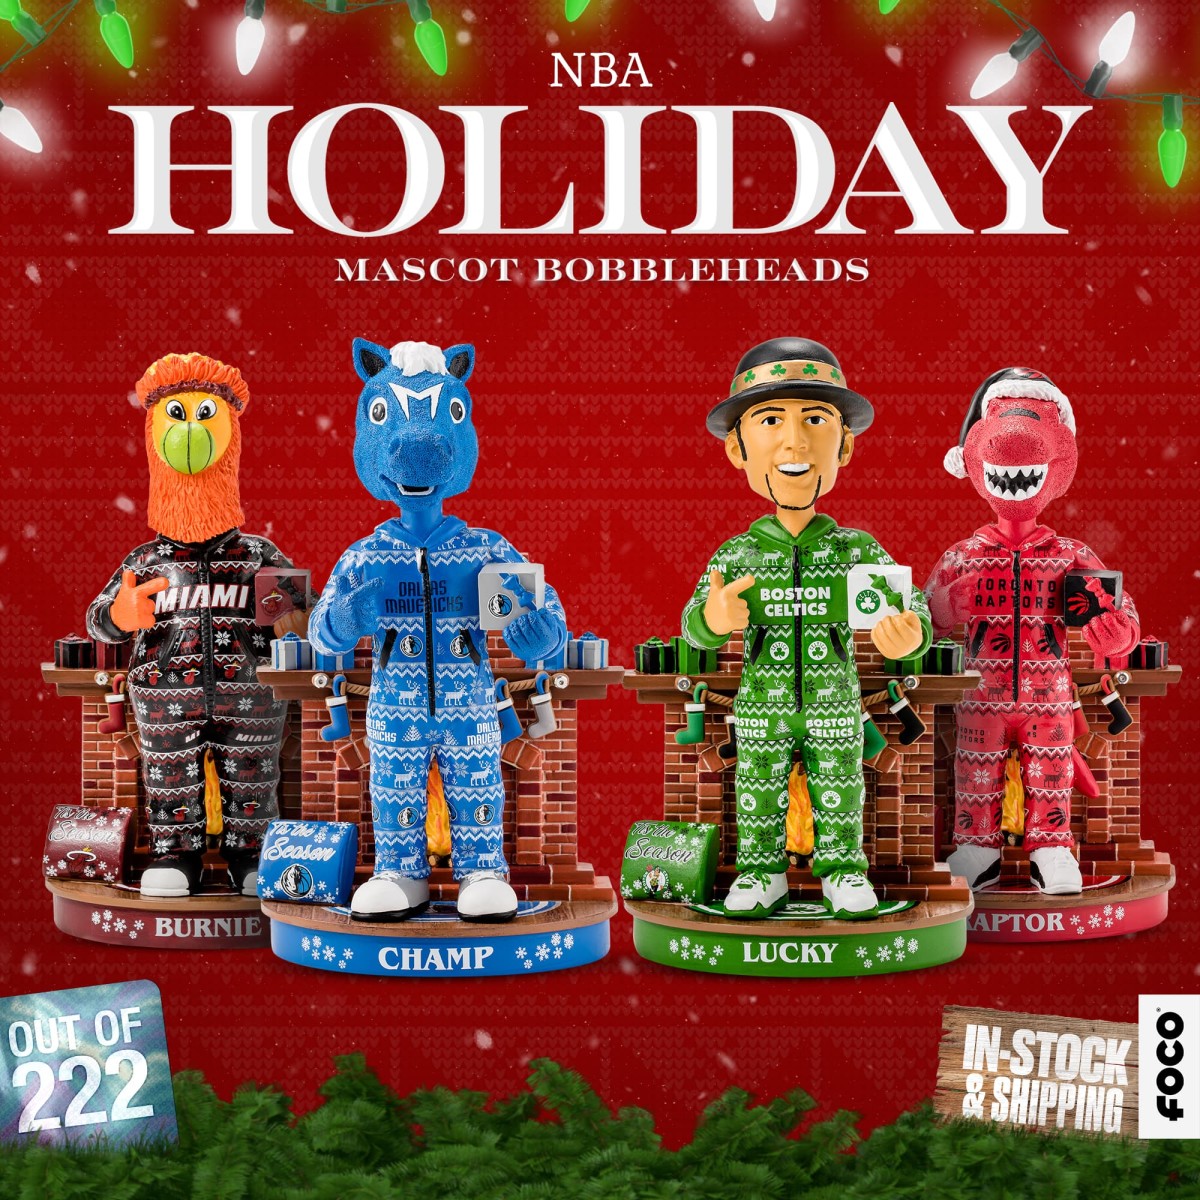 Holiday Mascot Bobbleheads NBA-Group